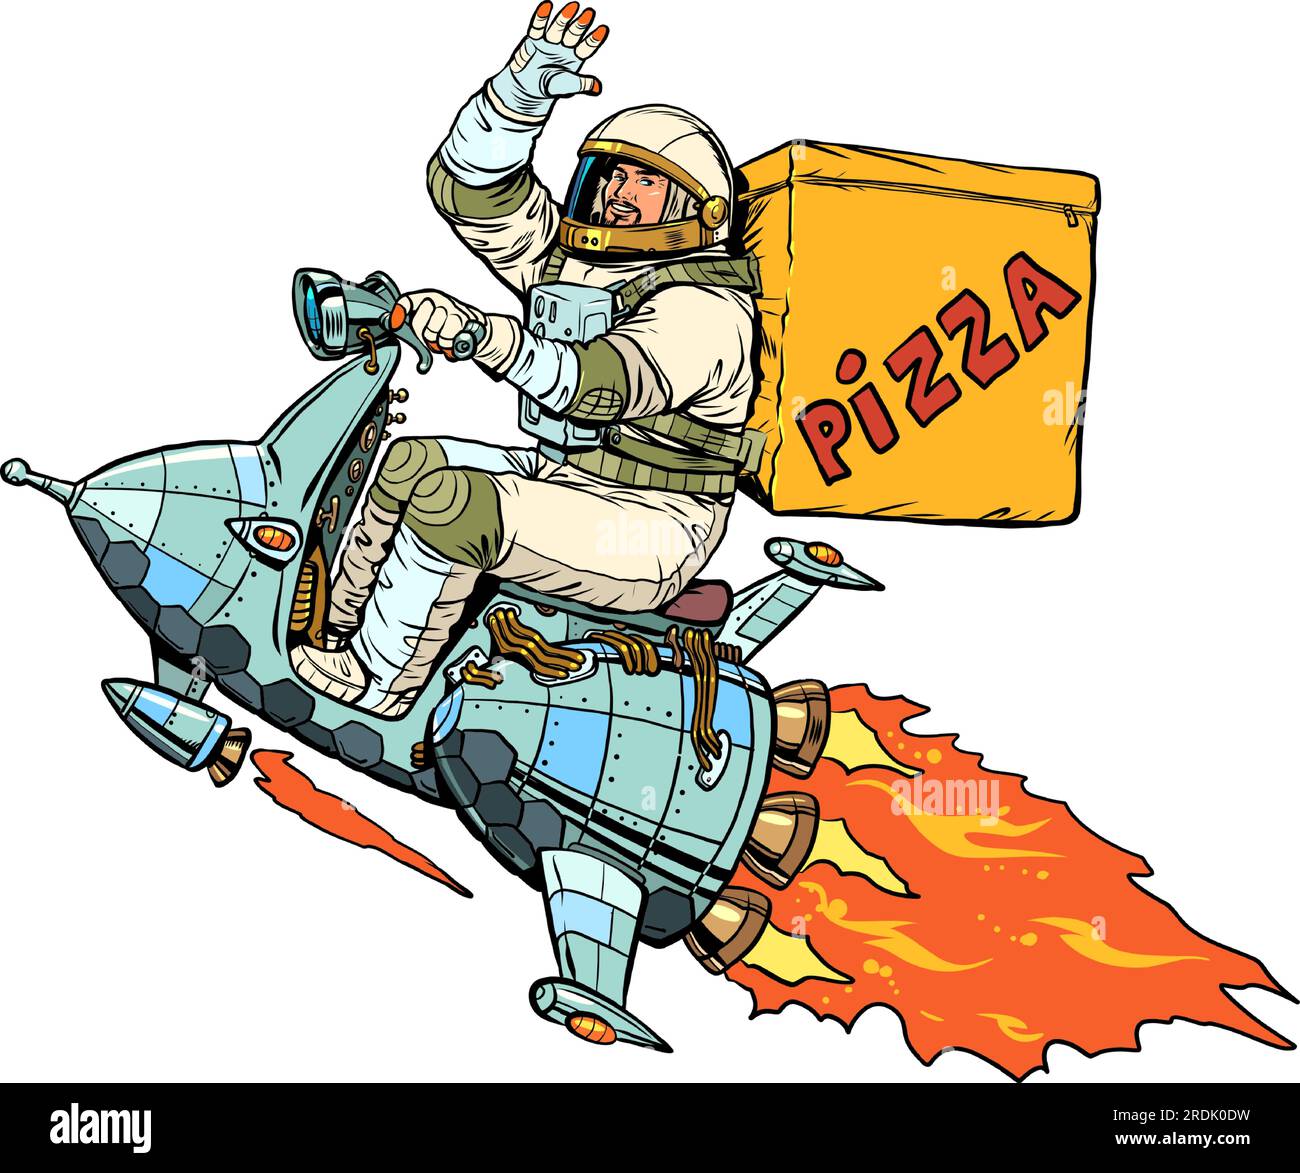 Hochwertige und sichere Lieferung an alle Orte der Welt. Der Astronaut fliegt auf einem Raumschiff und liefert Pizza. Pop Art Retro Stock Vektor